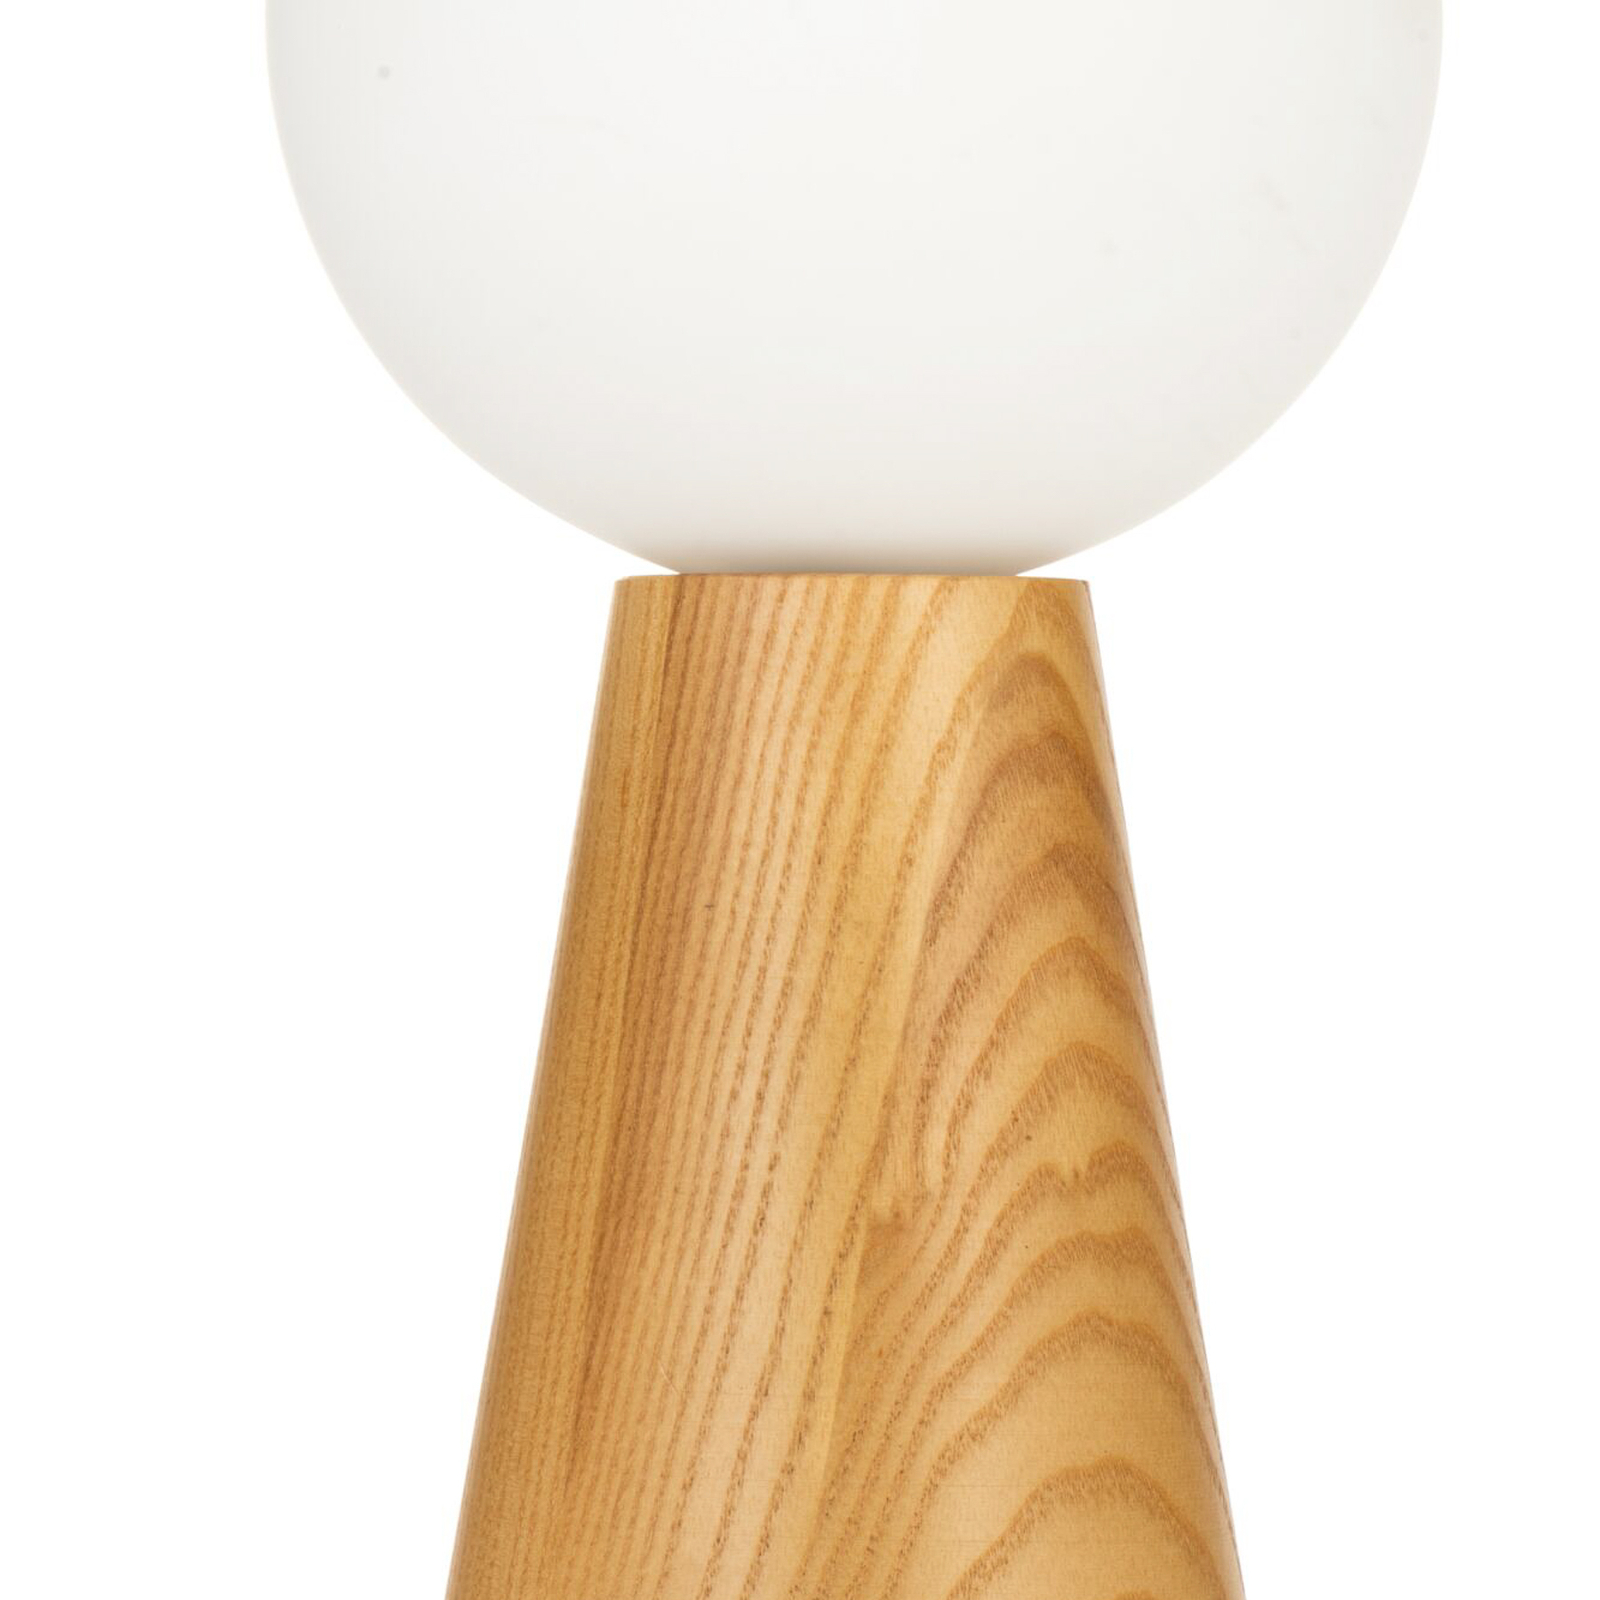 Pauleen Woody Soul table lamp, wood, glass